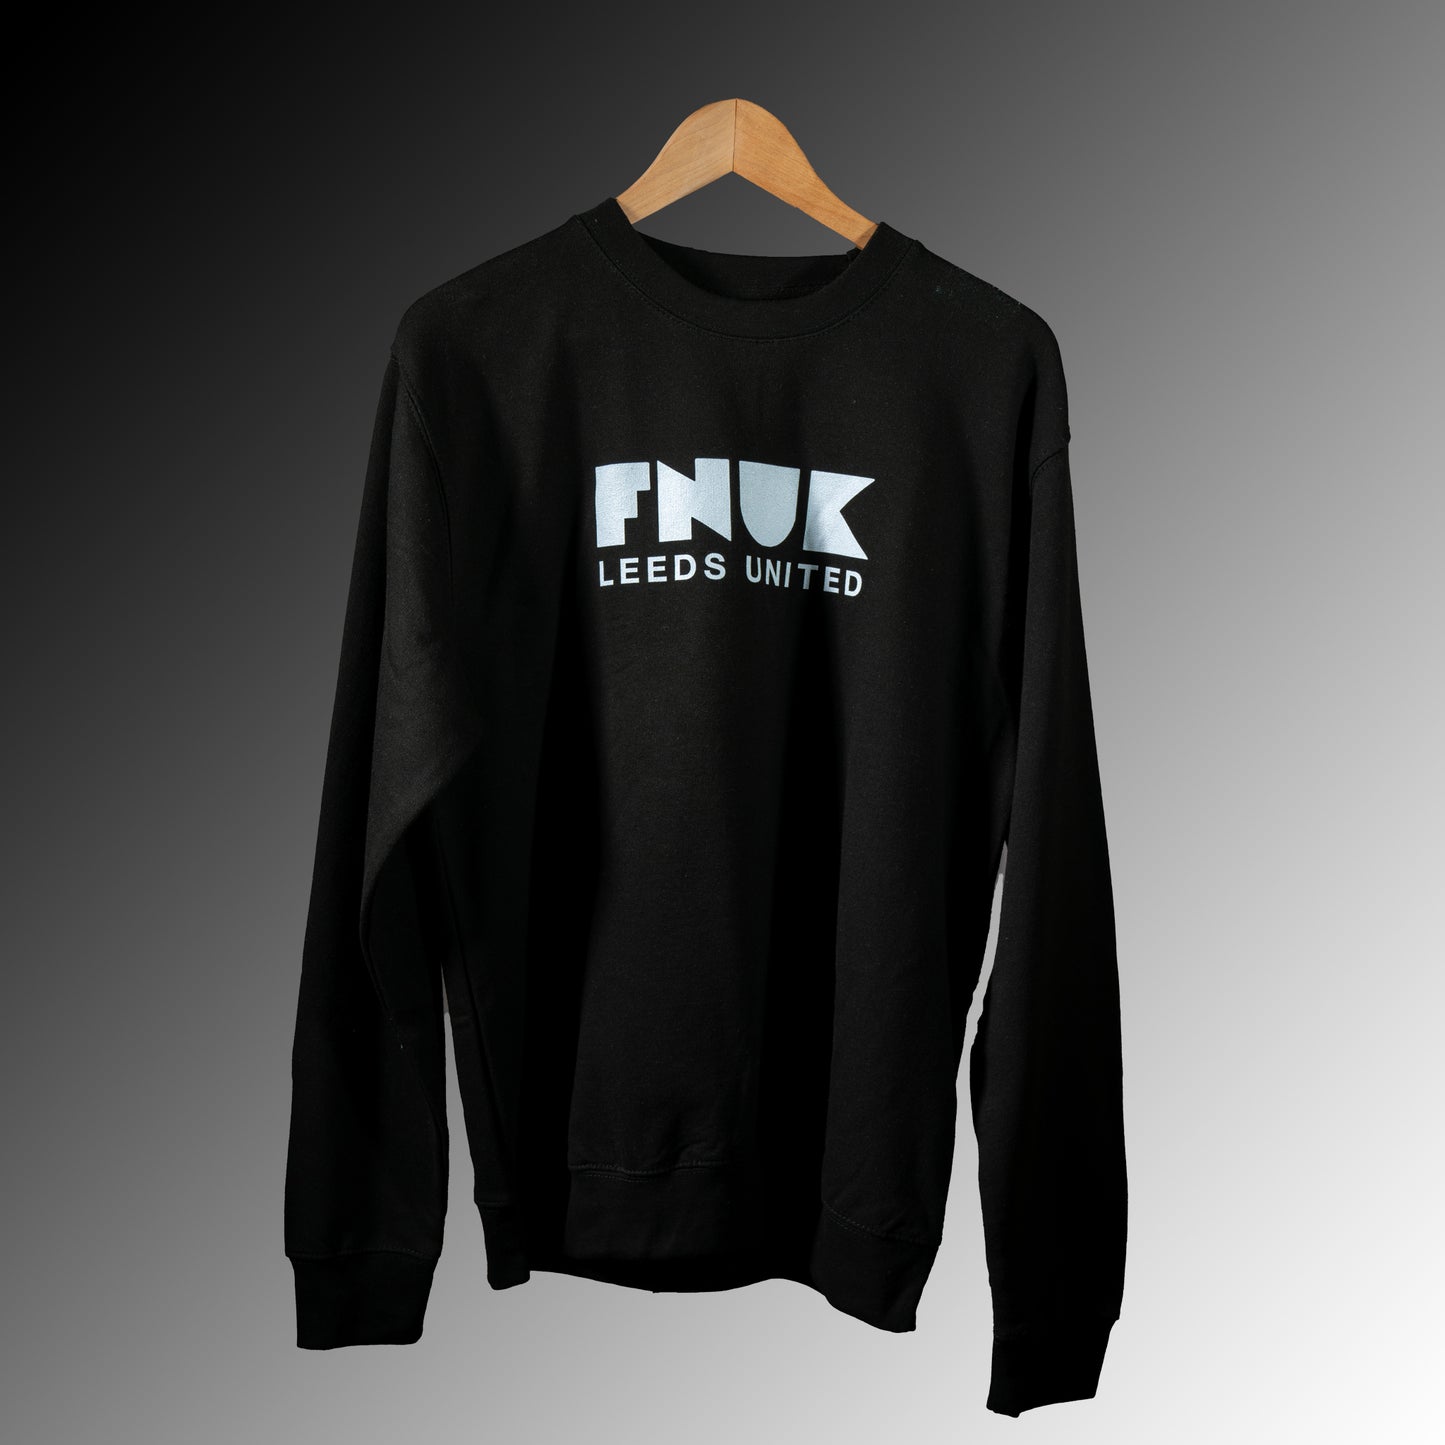 FNUK-logo med Leeds United-genser for kvinner i svart og hvitt